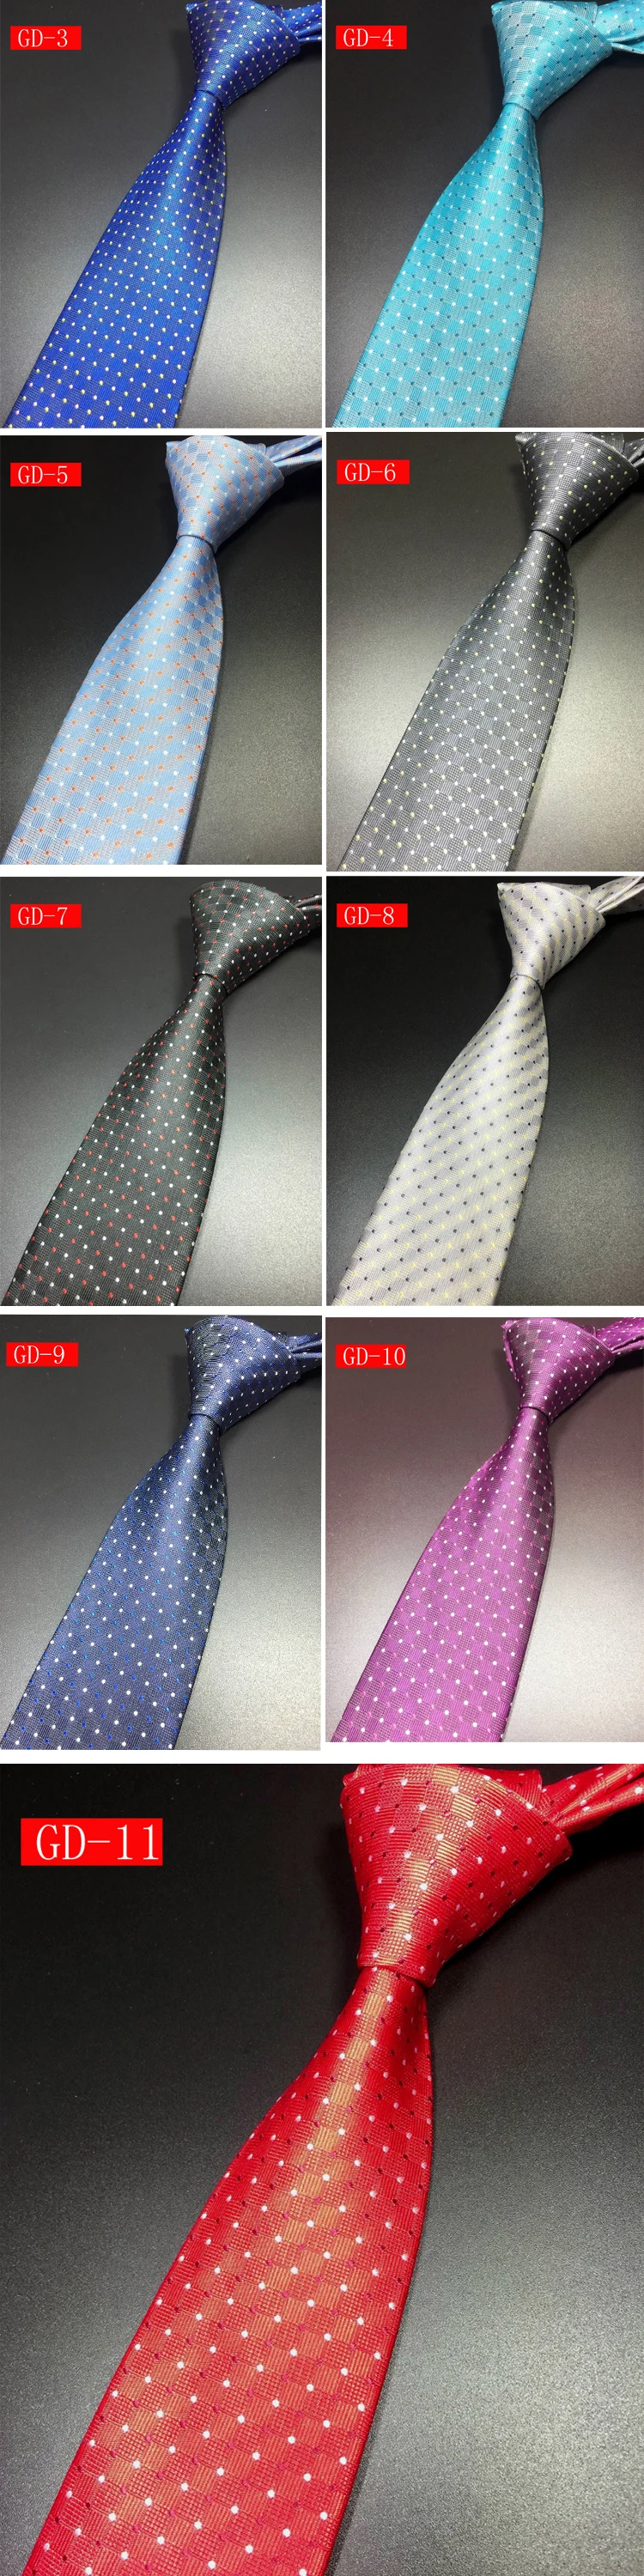 7 см Высокое качество 1200 иглы популярная точка роскошные глядя Шелковый как прикосновение складки устойчивы Бизнес Для мужчин шеи галстук